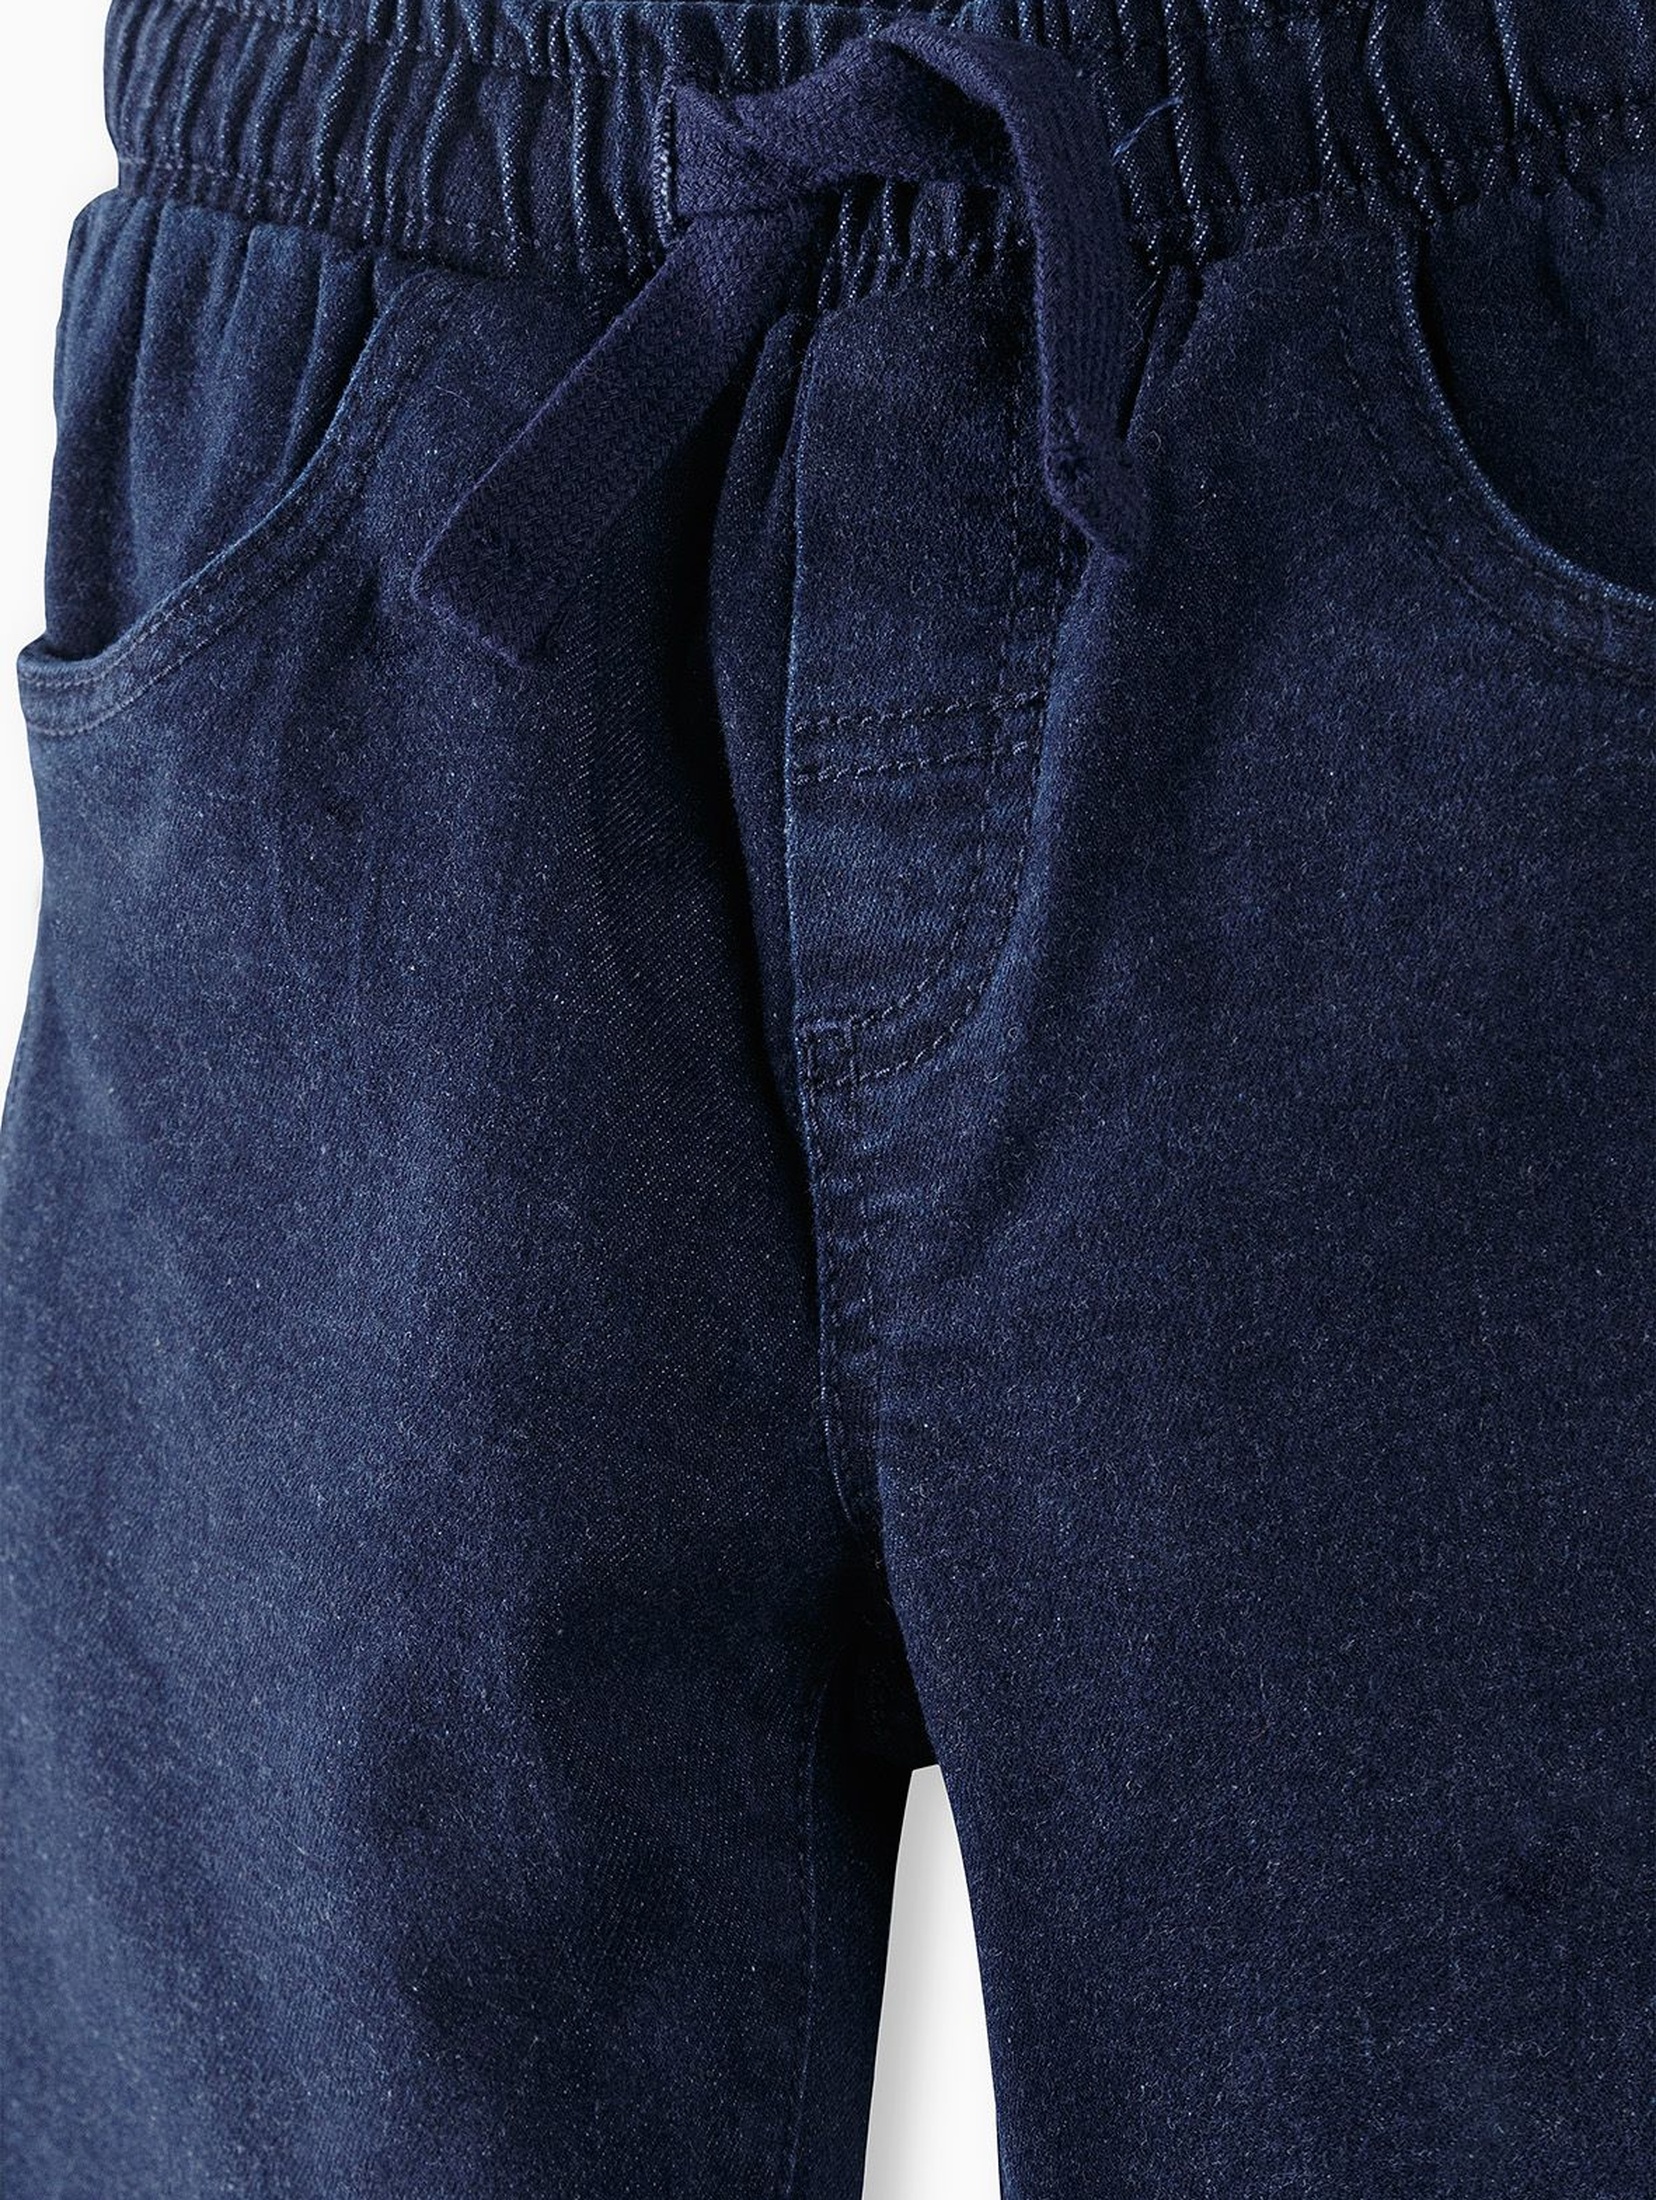 Spodnie chłopięce jeansowe w kolorze granatowymn